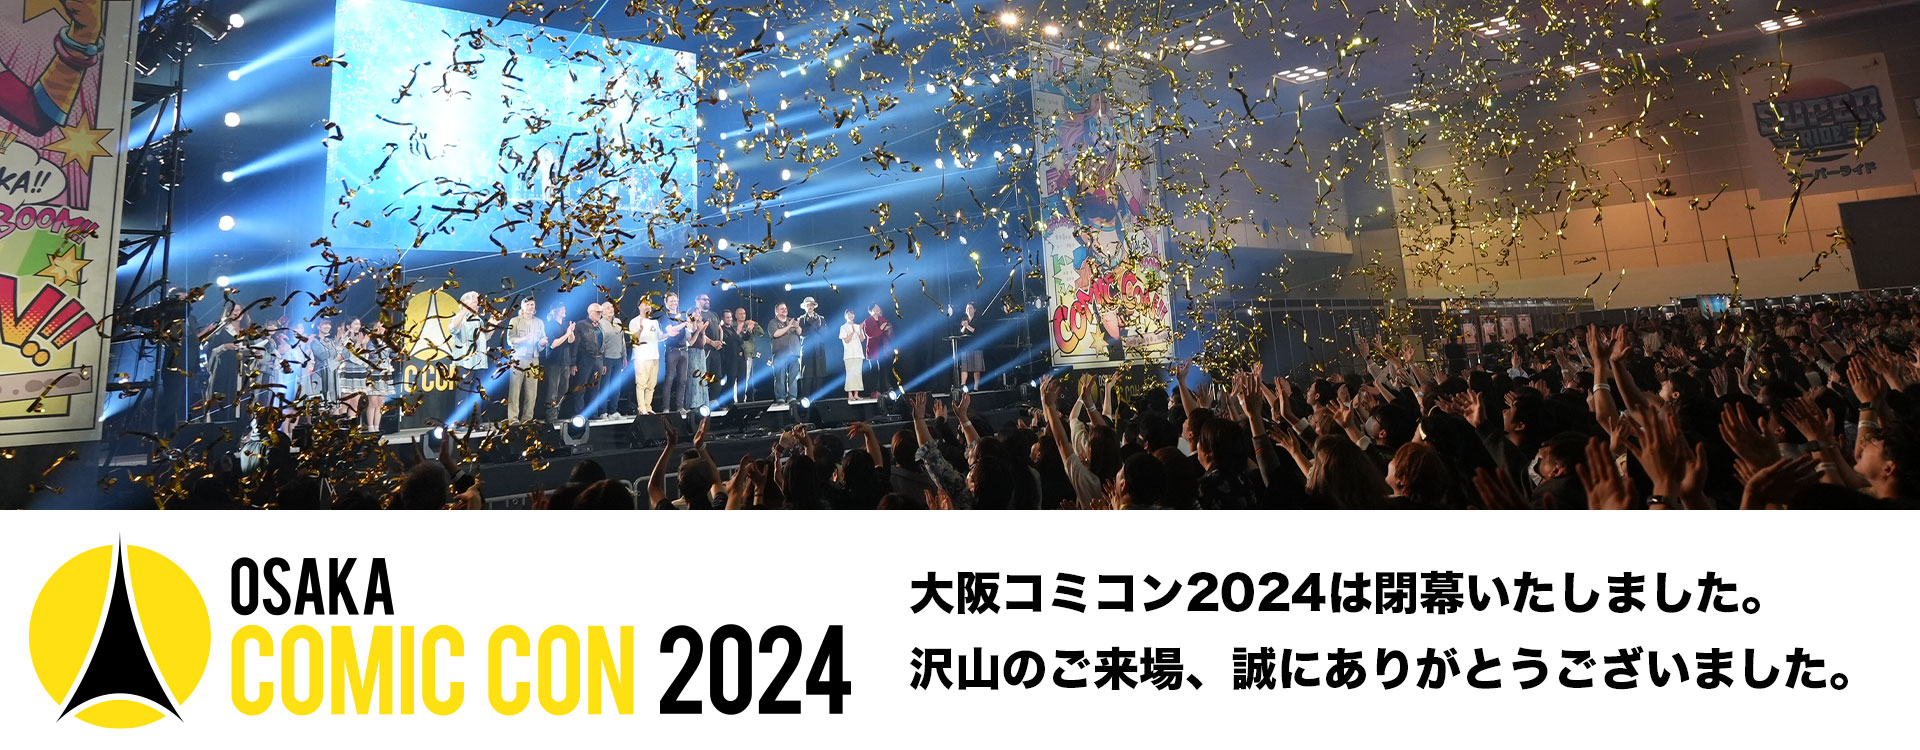 大阪コミコン2024 | OsakaComicCon」世界最大級のポップ・カルチャーの 